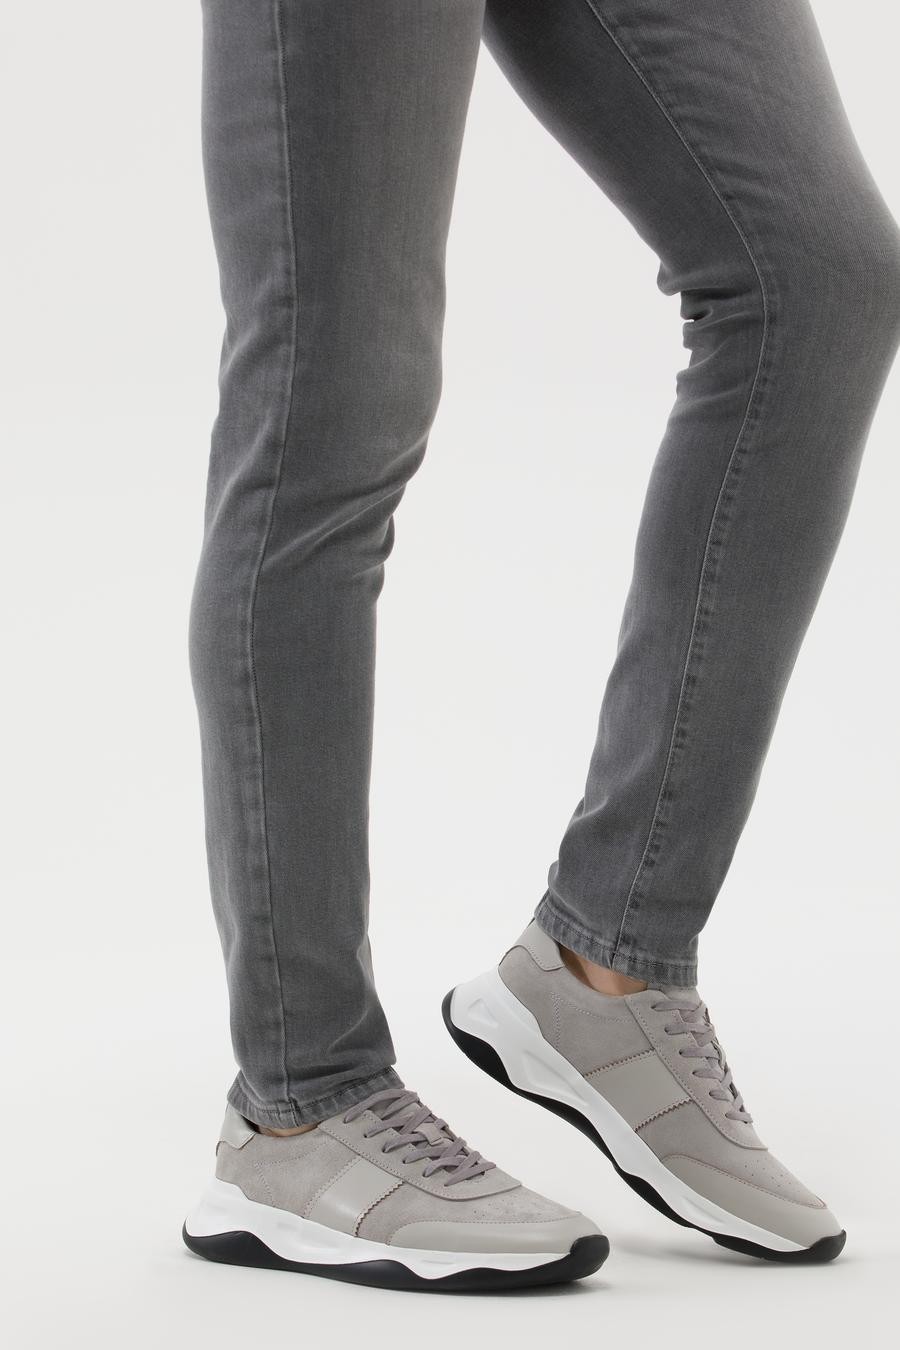 کفش  خاکستری  استاندارد  مردانه  پیرکاردین